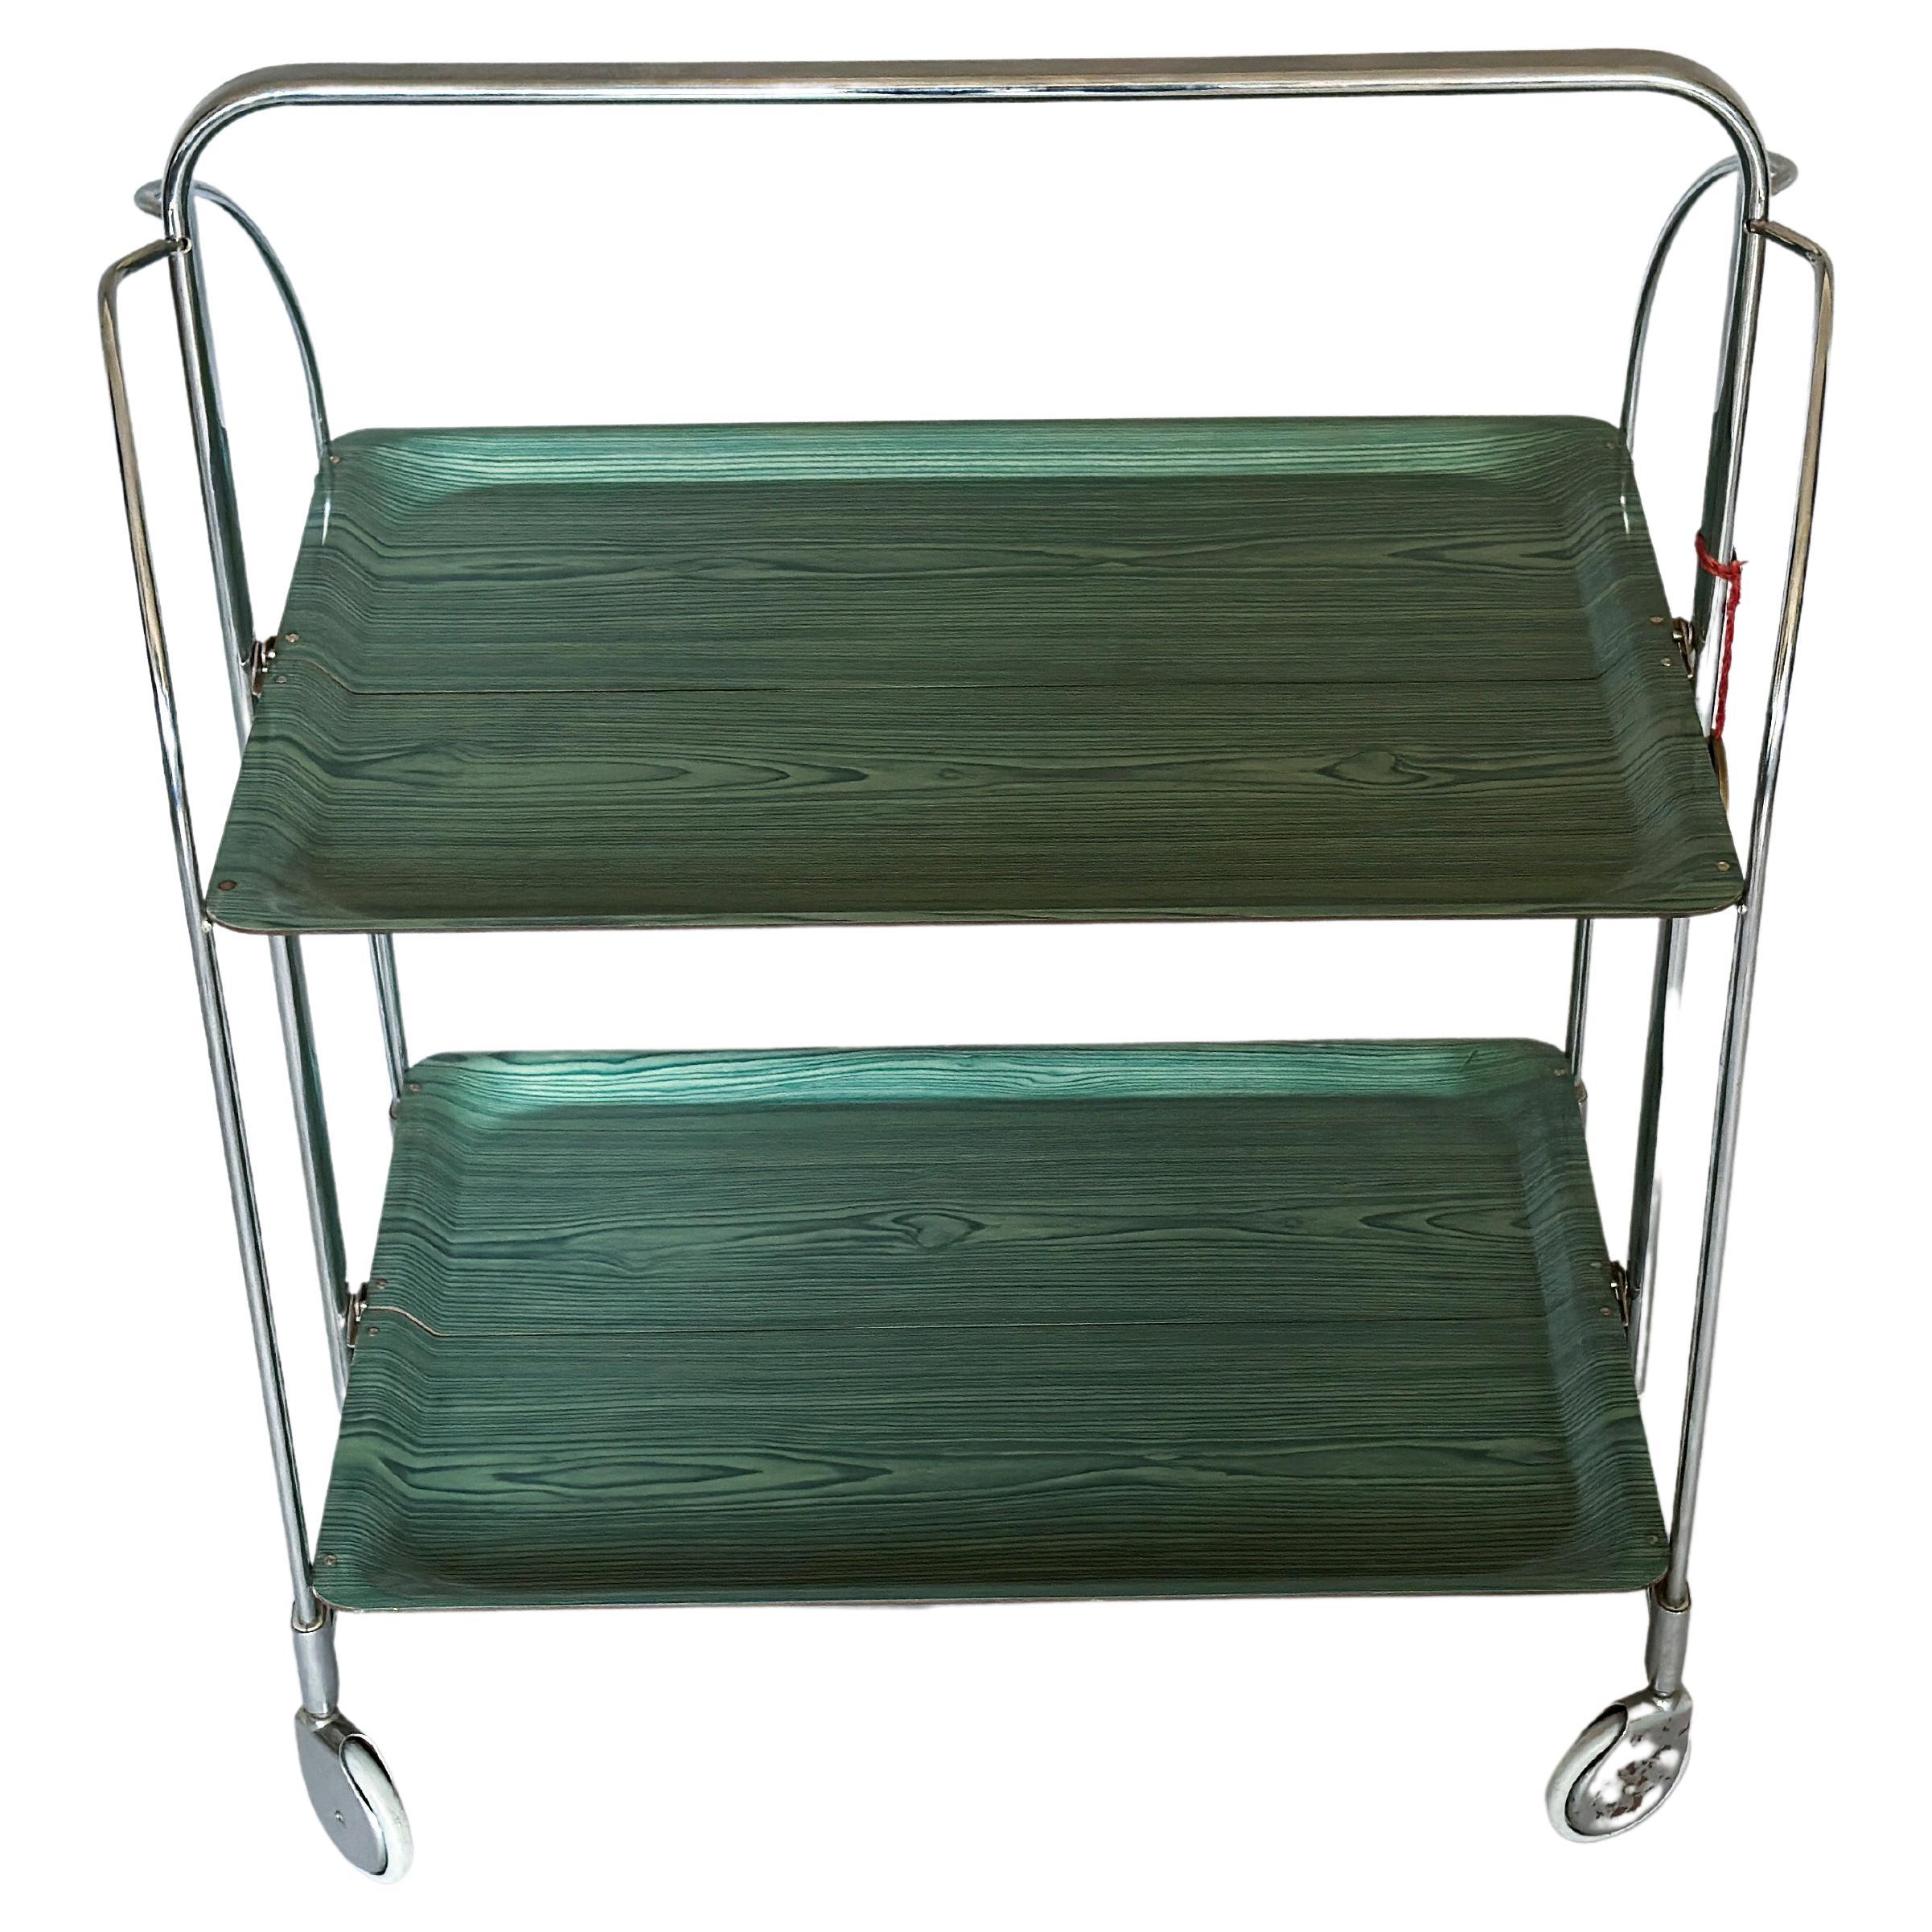 Mid-Century Modern Folding Bar Cart Trolley from Gerlinol